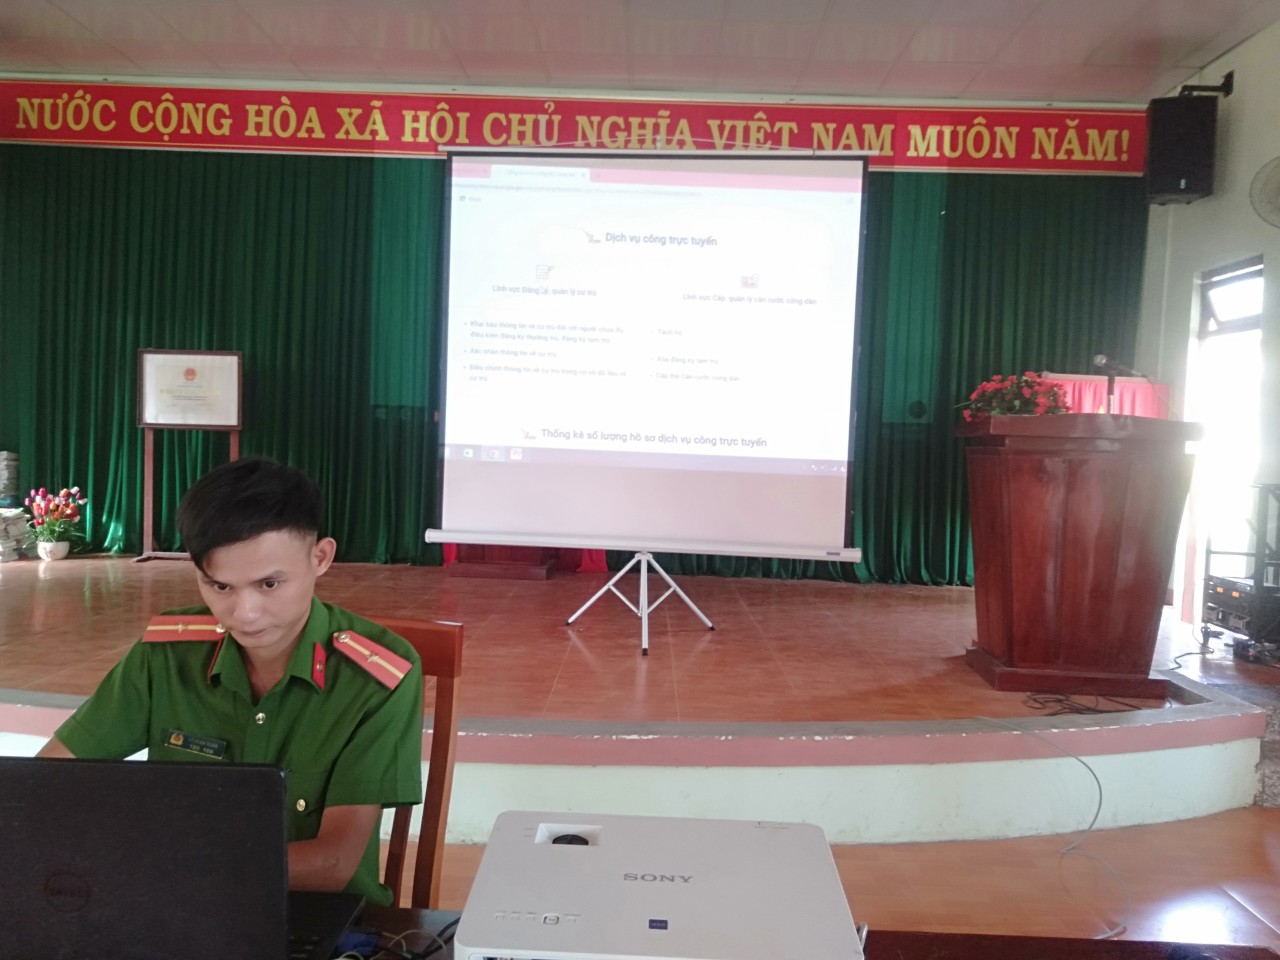 Ủy ban nhân dân xã Trà Tân tổ chức Hội nghị để tuyên truyền CCHC và hướng dẫn thực hiện Đăng ký Dịch vụ công trực tuyến; thực hiện nộp hồ sơ để giải quyết qua cổng Dịch vụ công Quốc gia